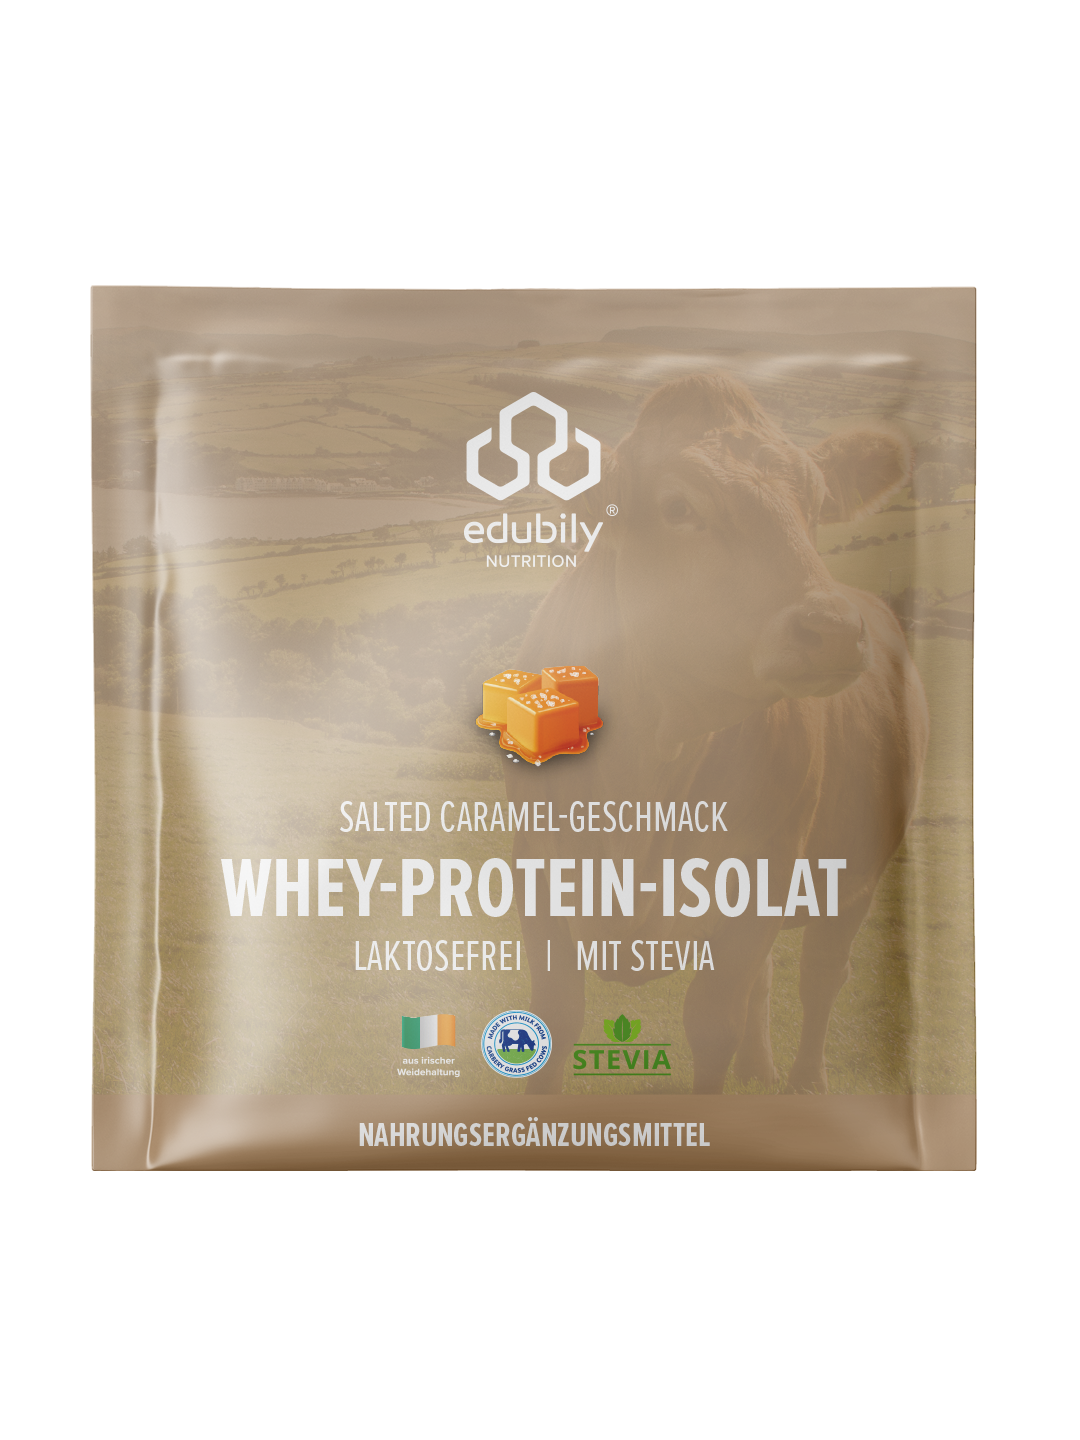 Whey-Protein-Isolat Probierbeutel Set - 4 Geschmacksrichtungen, 90% Proteinkonzentration